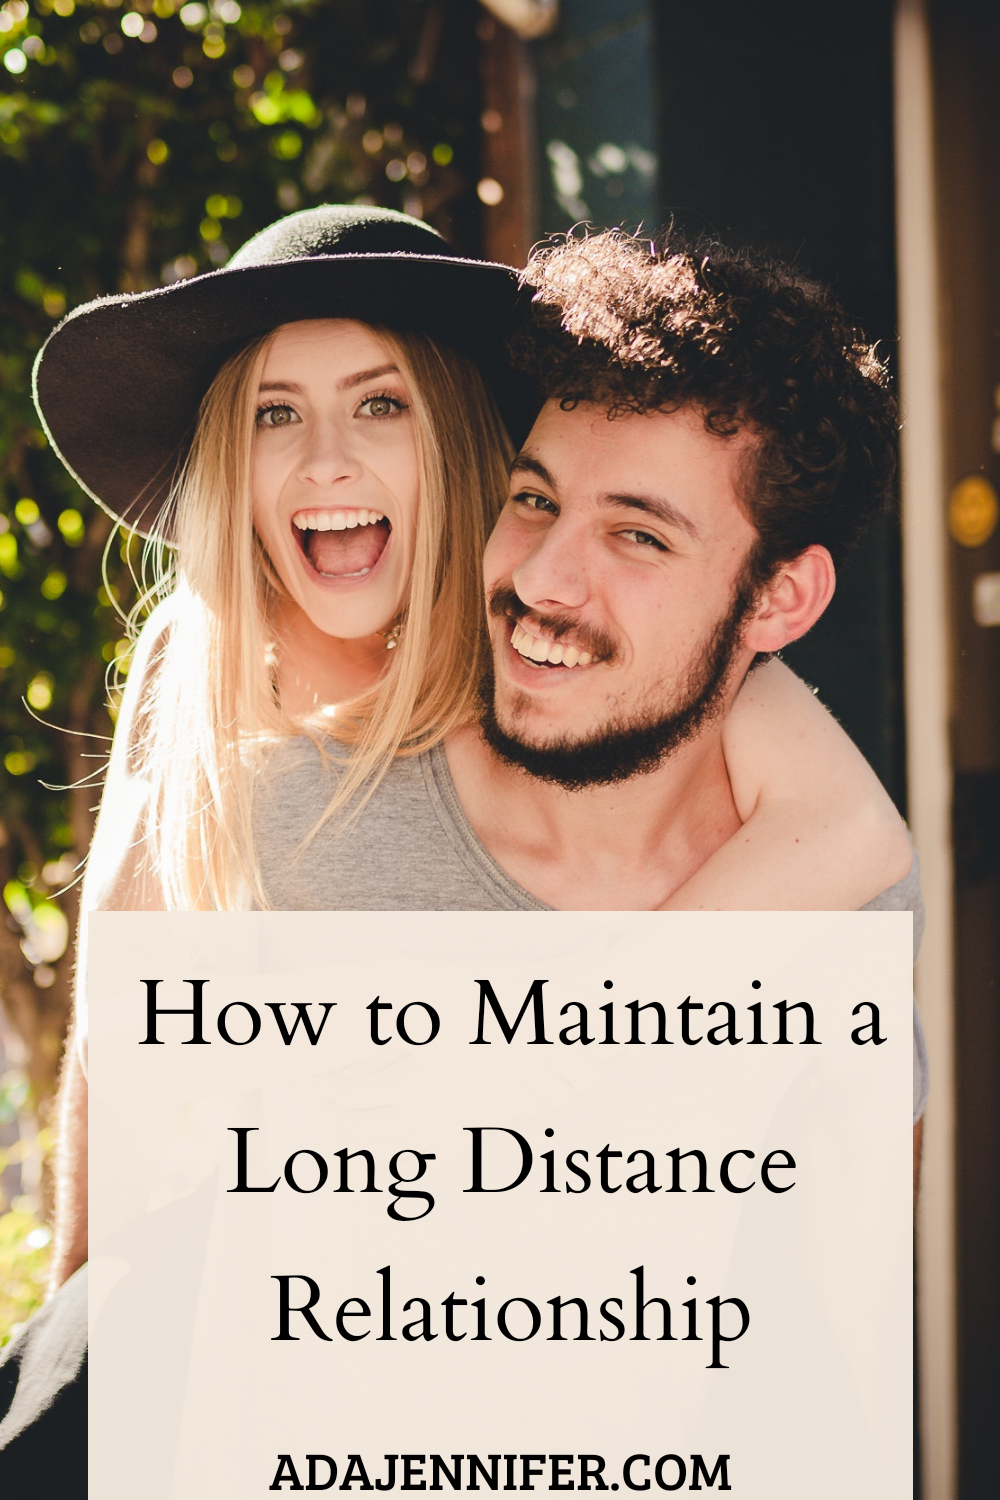 Romantic ideas long distance relationship